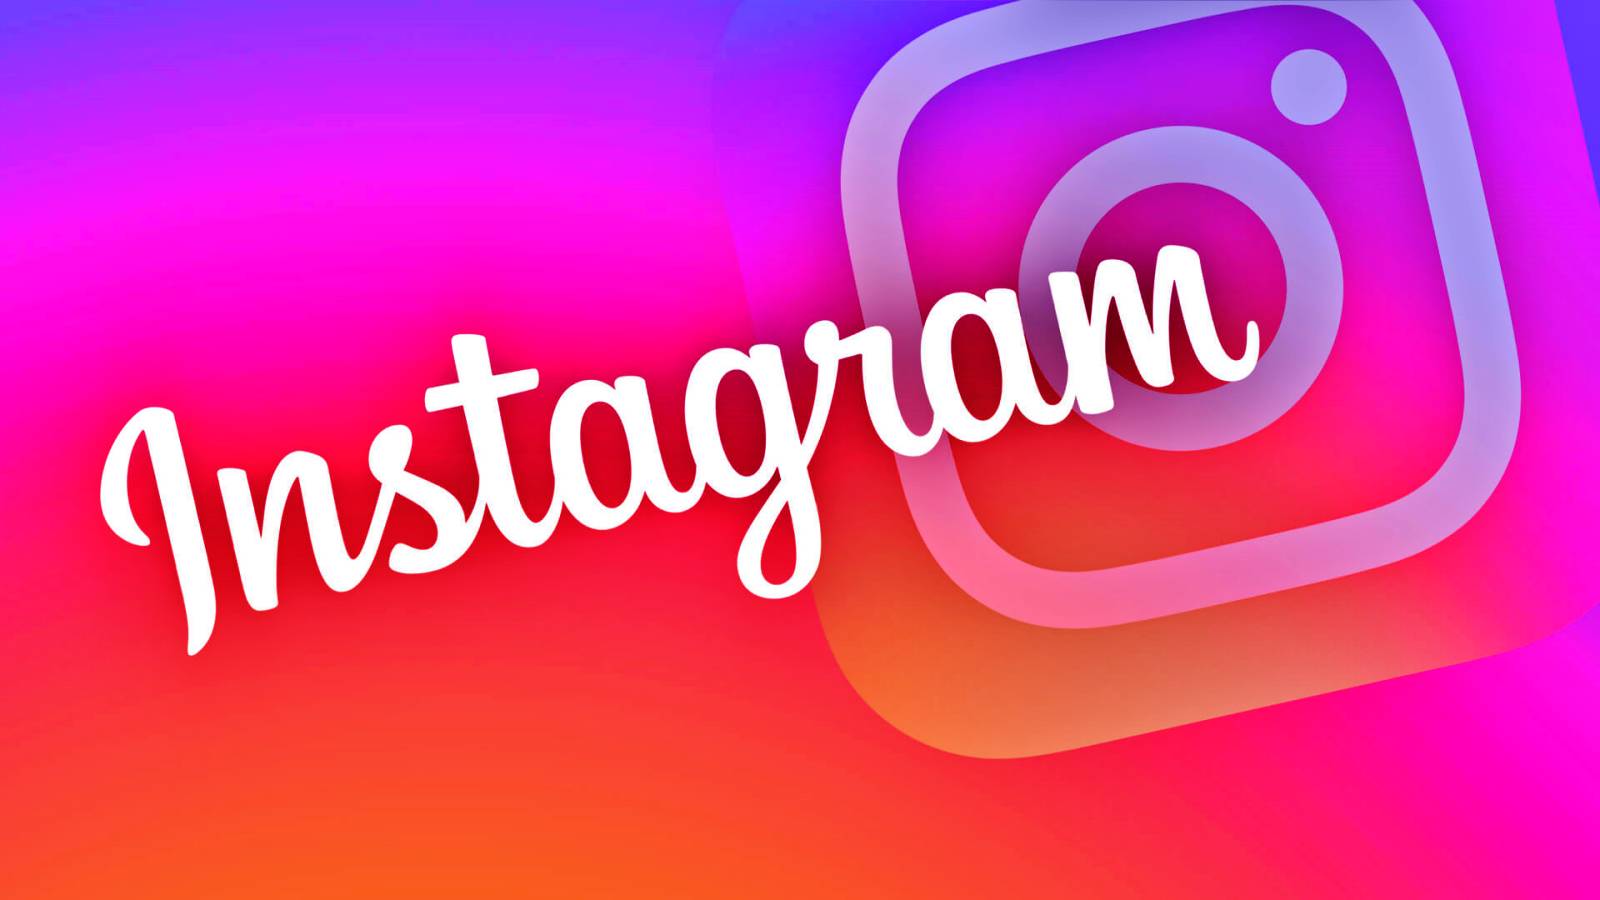 Instagram Update vine cu Noutati pentru Aplicatia Dedicata Telefoanelor